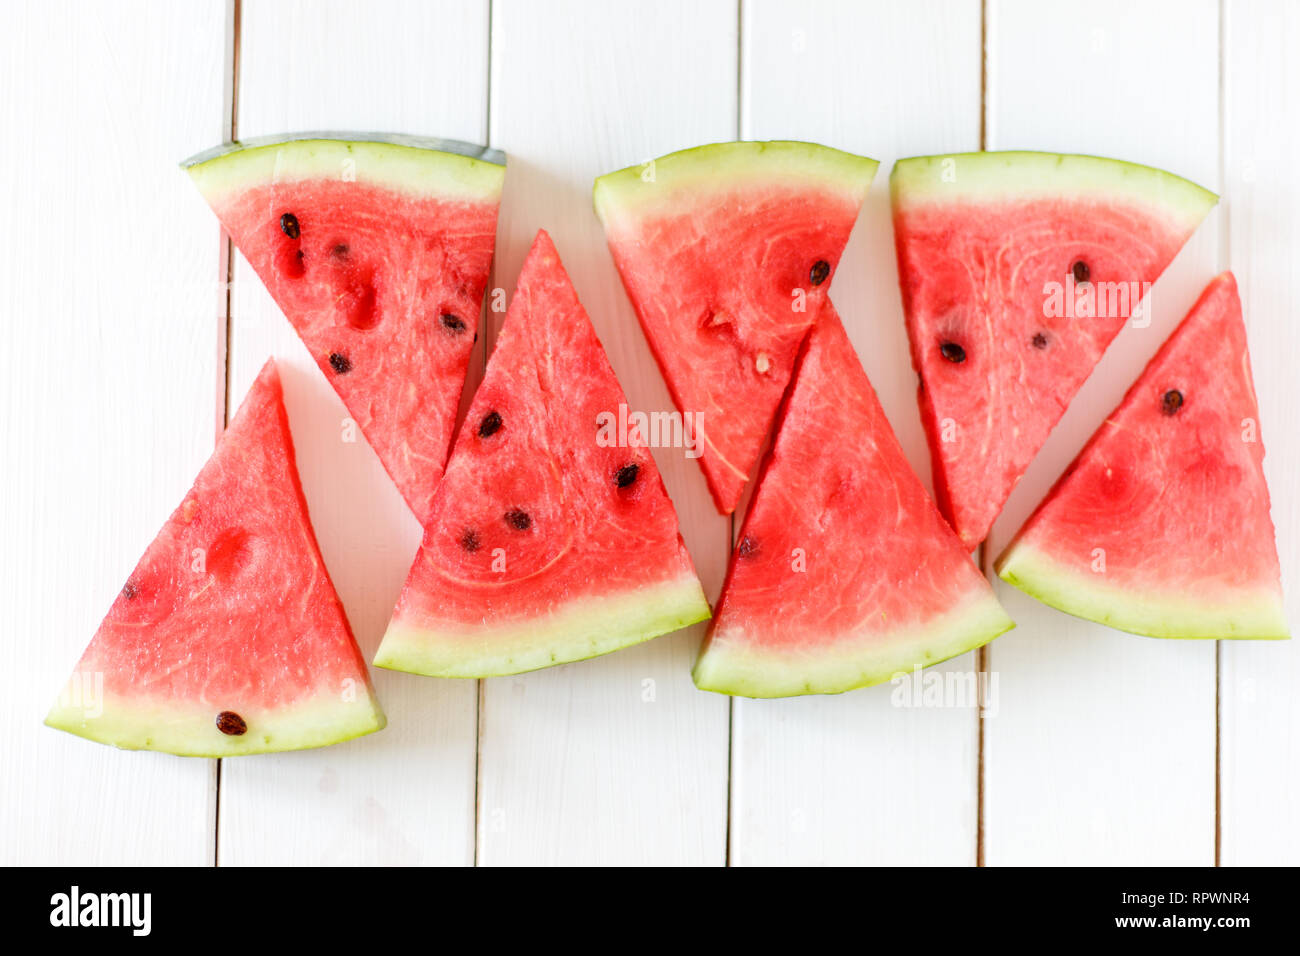 Wassermelone Schicht auf einem weißen rustikal Holz Hintergrund, beliebt im Sommer Obst mit lecker Wassermelone, Flach Fotografie der Wassermelone Schicht Eis am Stiel. Stockfoto